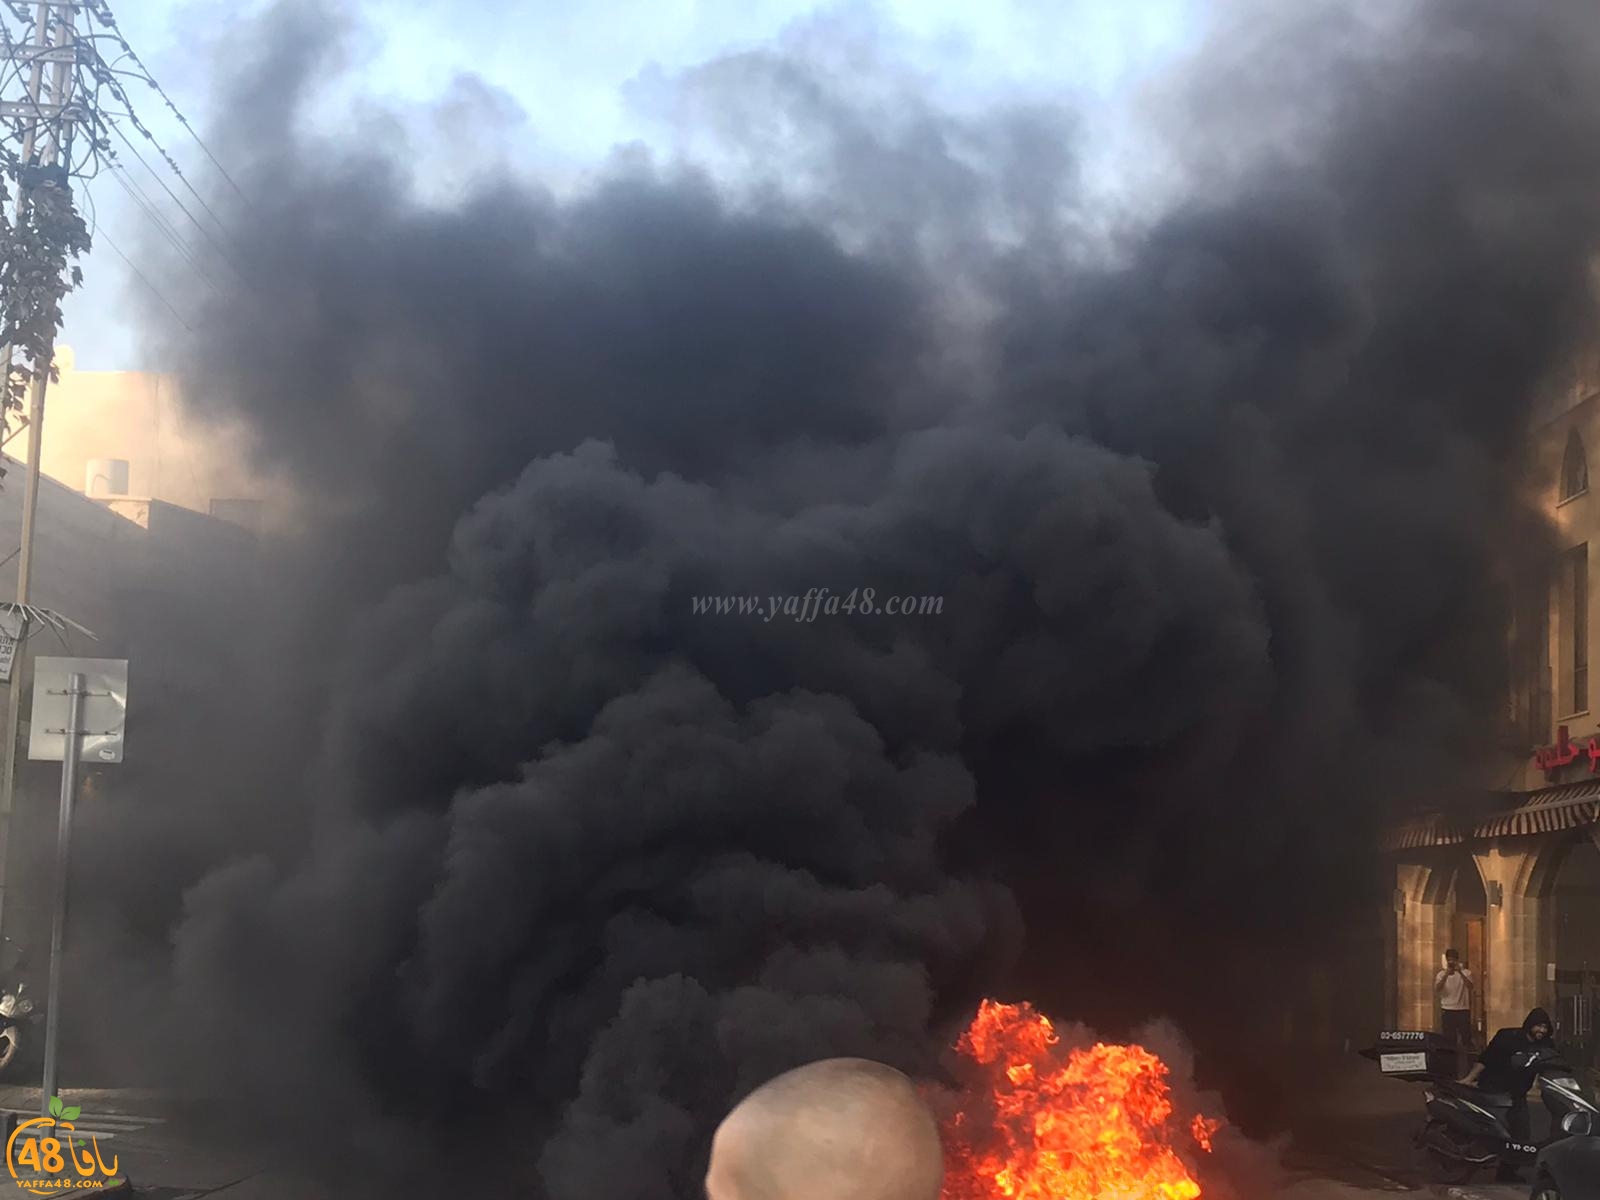  فيديو: اشعال اطارات واغلاق شارع ييفت احتجاجاً على عنف الشرطة